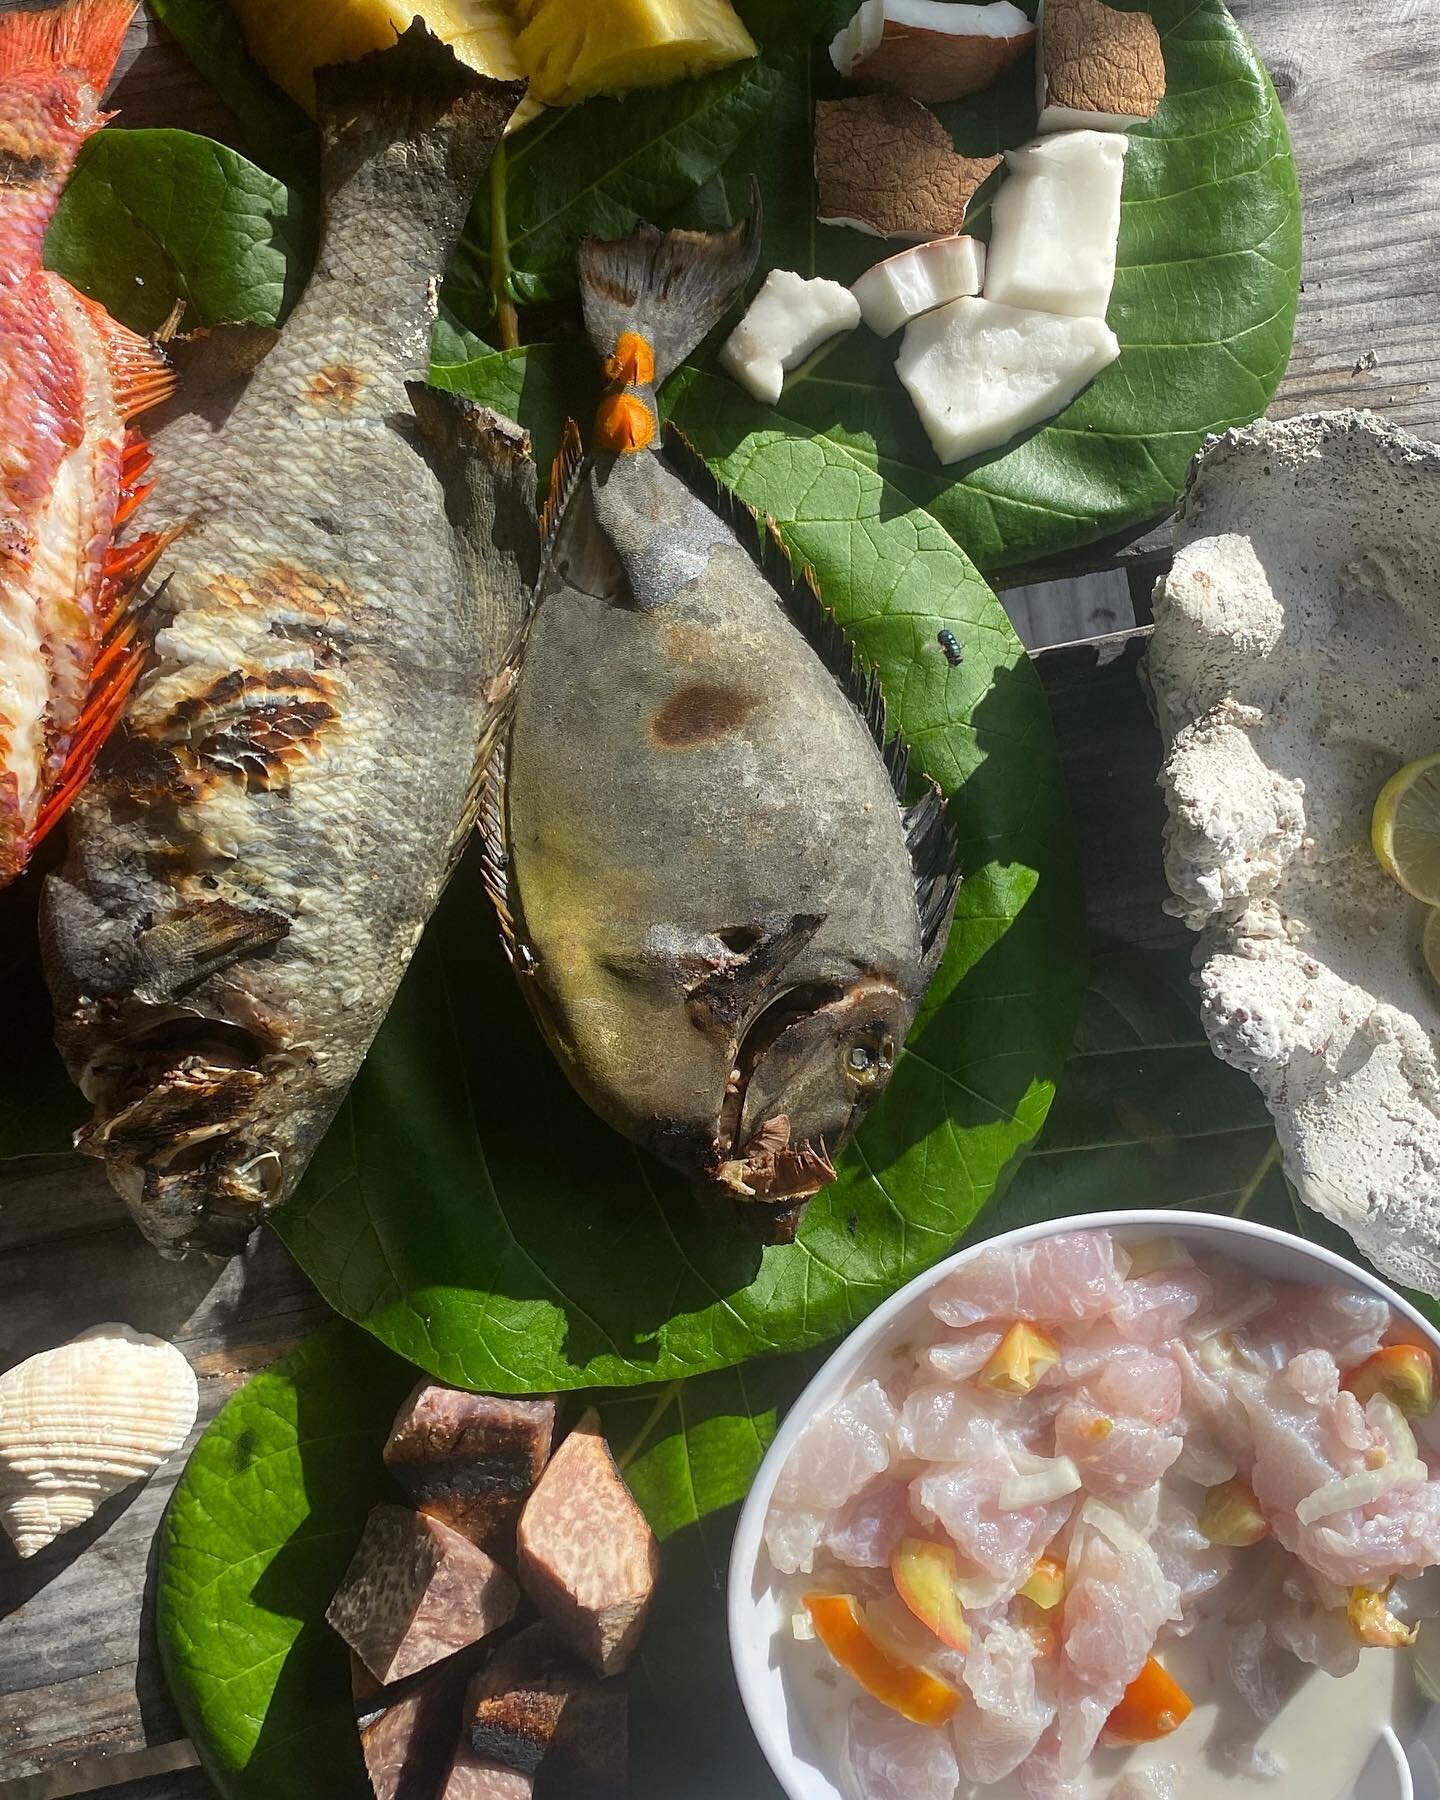 Tamaa maitai 
.
Our best choice fish for our guests during our full private tour #tikehau #tikewow #privatetour #paradise #tahiti #moorea #borabora #frenchpolynesia #love #tikehauoceantour